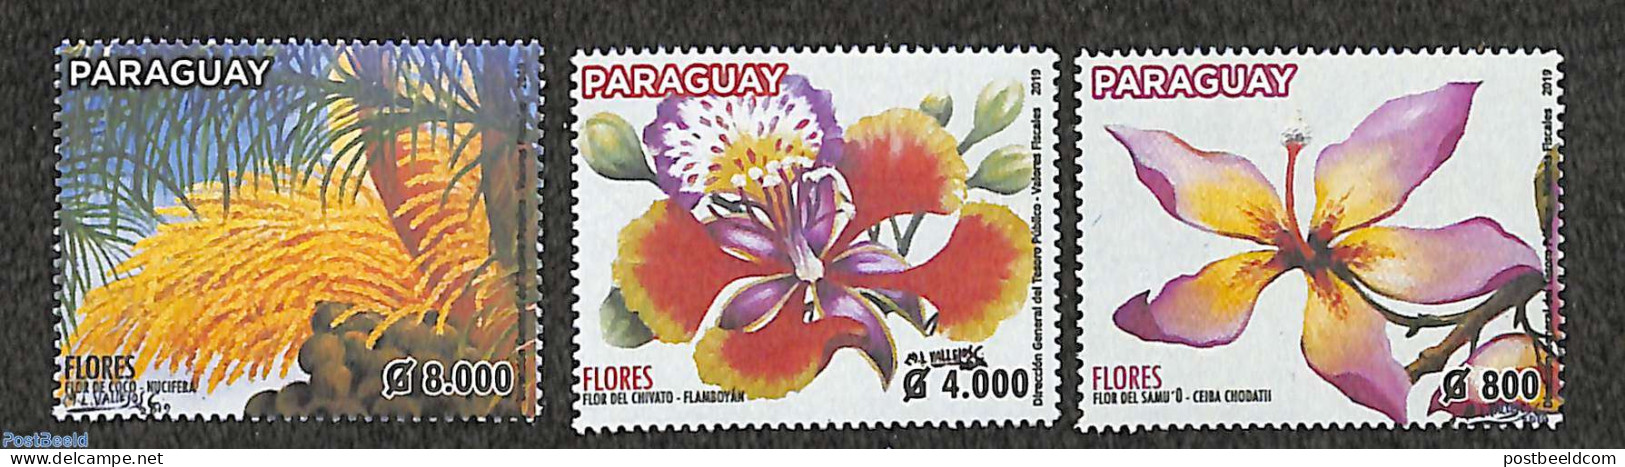 Paraguay 2019 Flowers 3v, Mint NH, Nature - Flowers & Plants - Paraguay